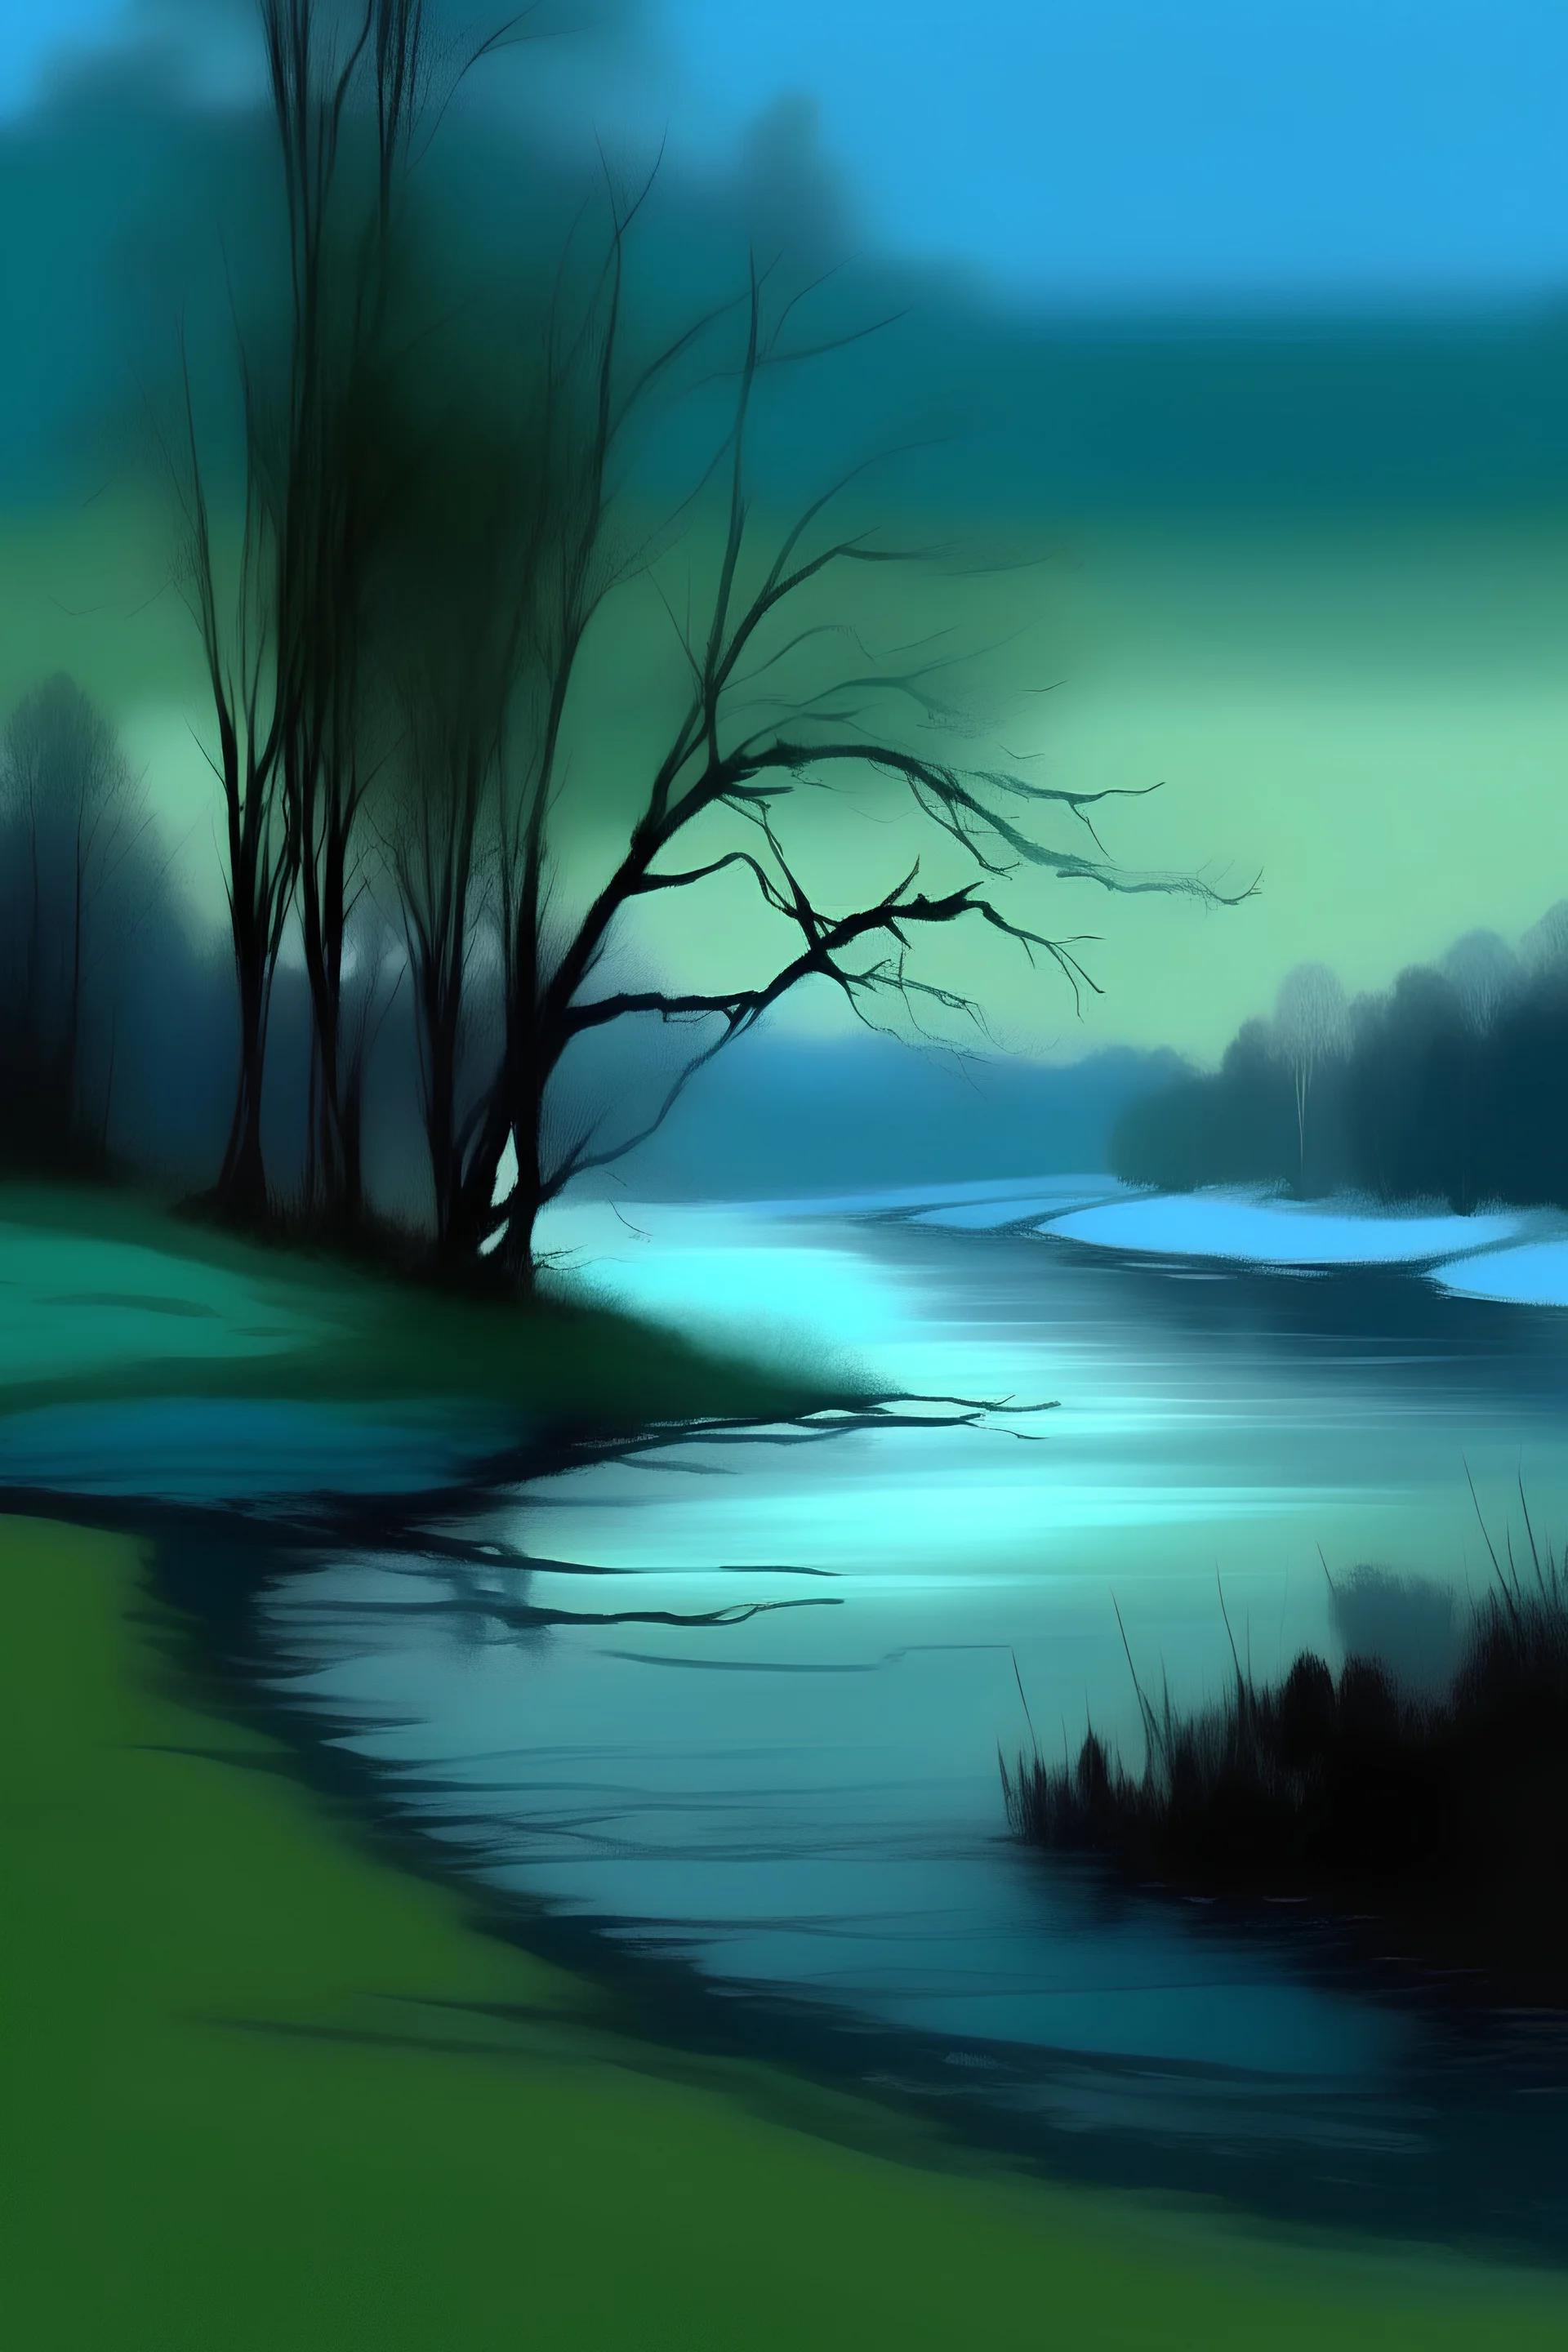 Atardecer, invernal, paleta de azules y verdes, con un árbol y un río. Al estilo de turner